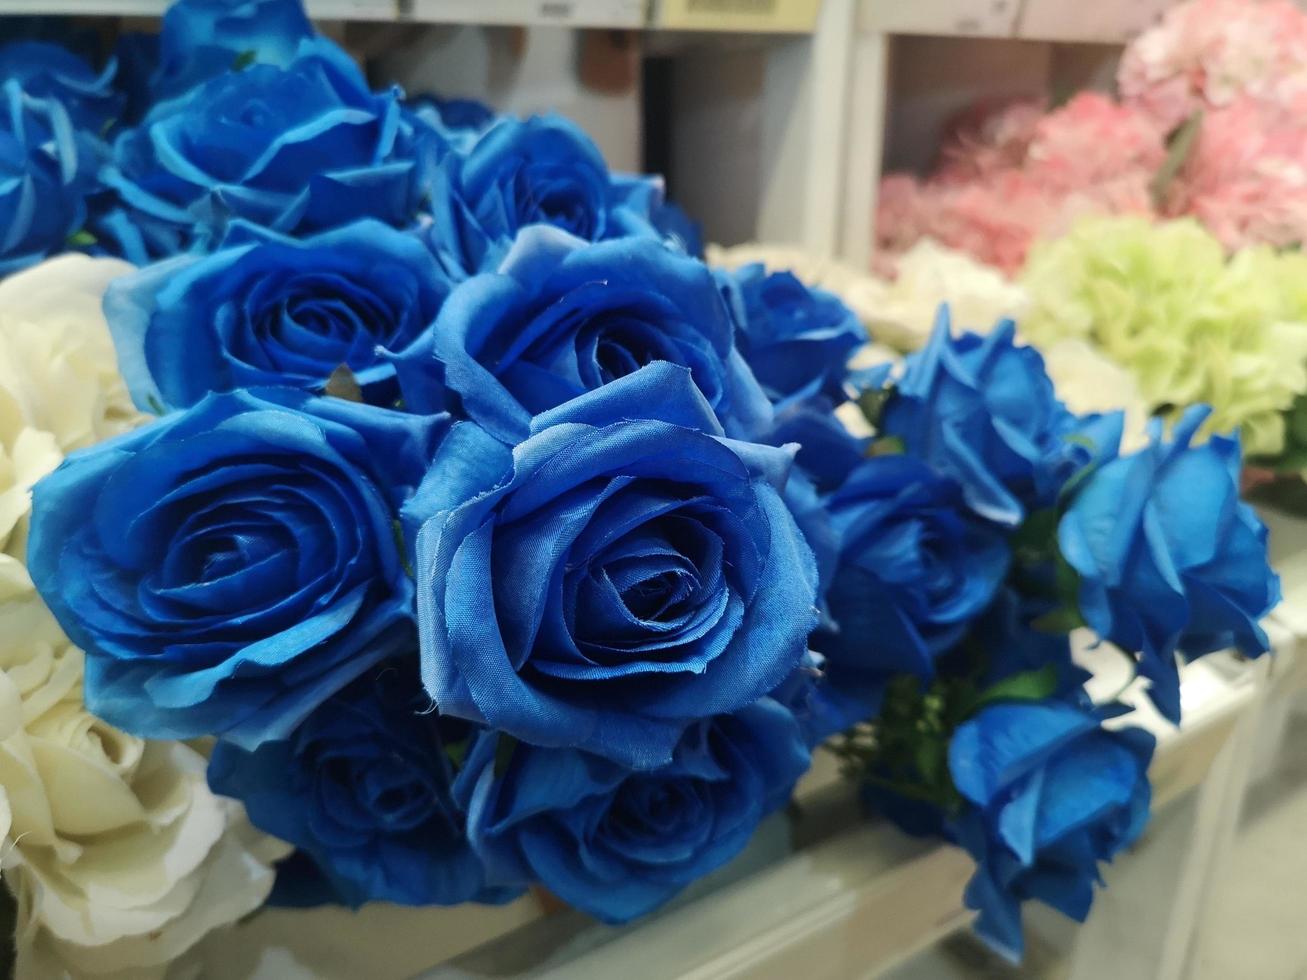 rose bleu foncé fait main beau bouquet artificiel fleurs décoration fond ornemental dans la couleur de ton classique vintage pour carte de voeux ou tissu de célébration et plastique, saint valentin, amour photo